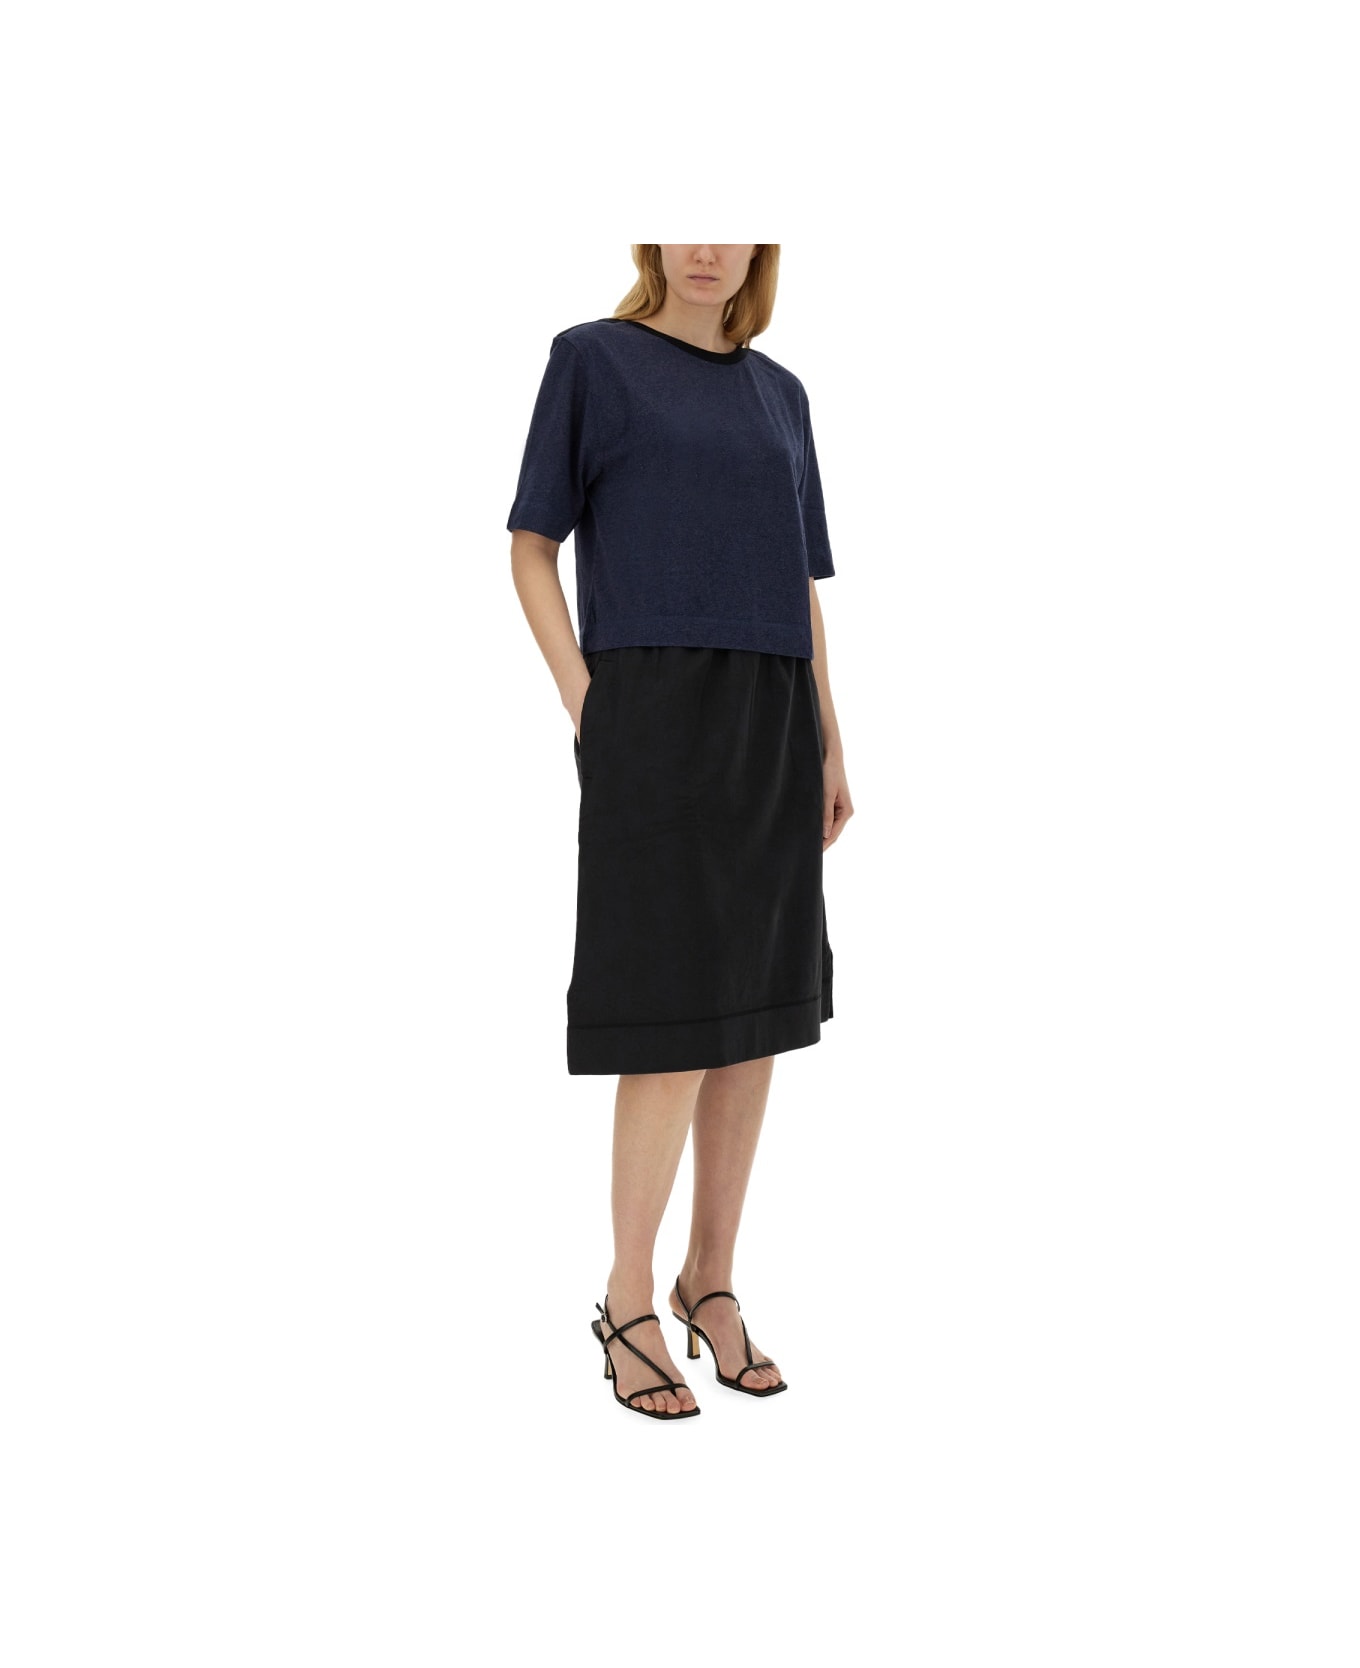 Margaret Howell Cotton Skirt - BLACK